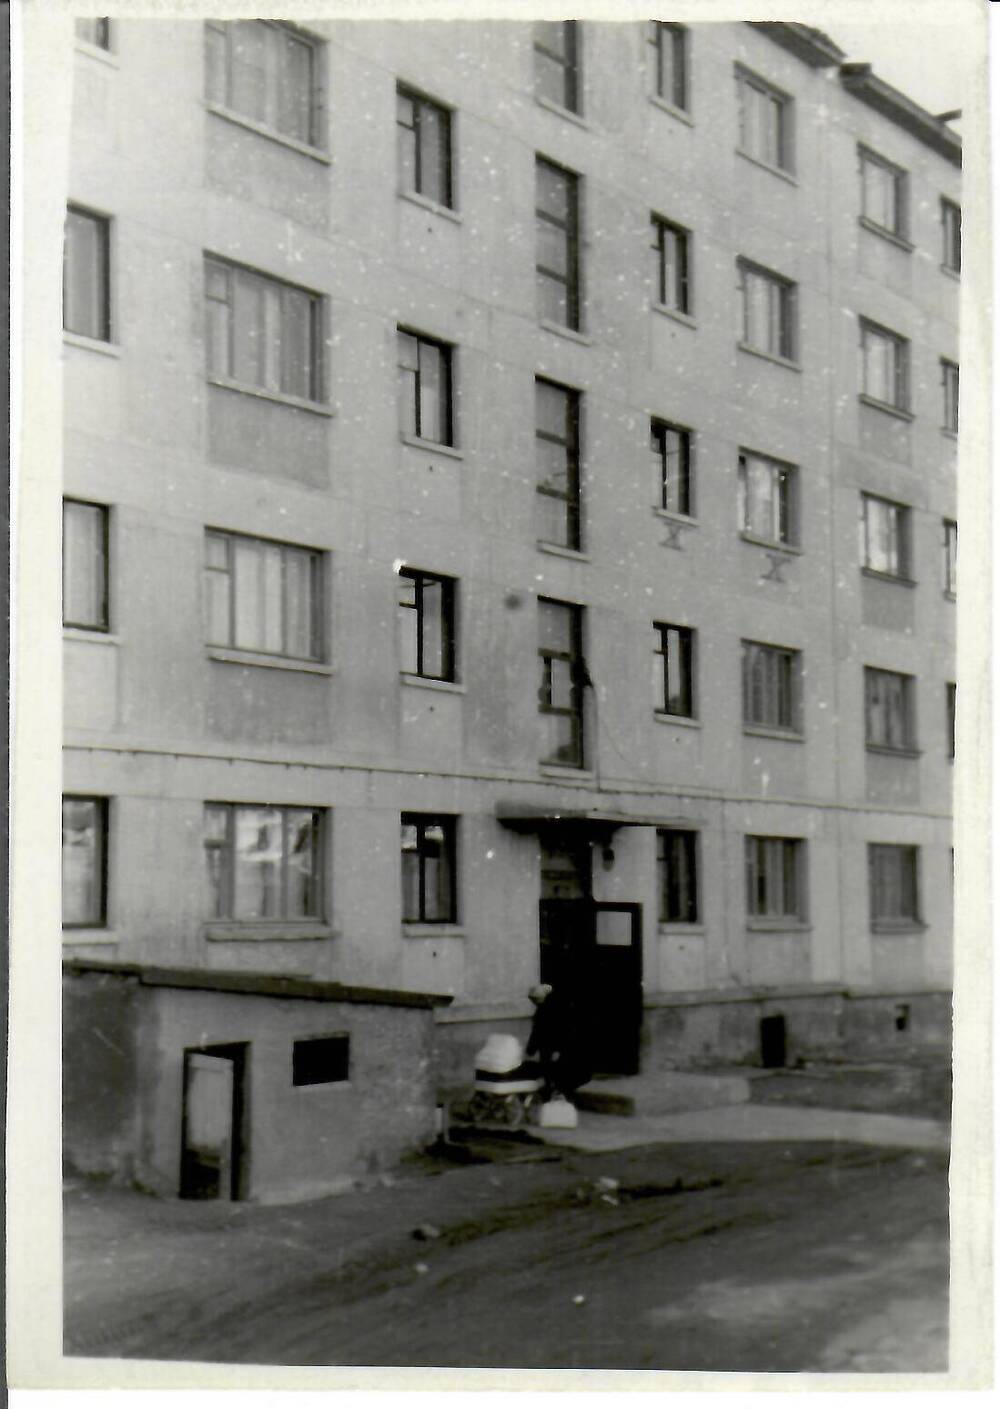 Фотография черно-белая, глянцевая печать. На фото: вид на пятиэтажный дом. У подъезда женщина с коляской, г. Магадан, 1966 г.